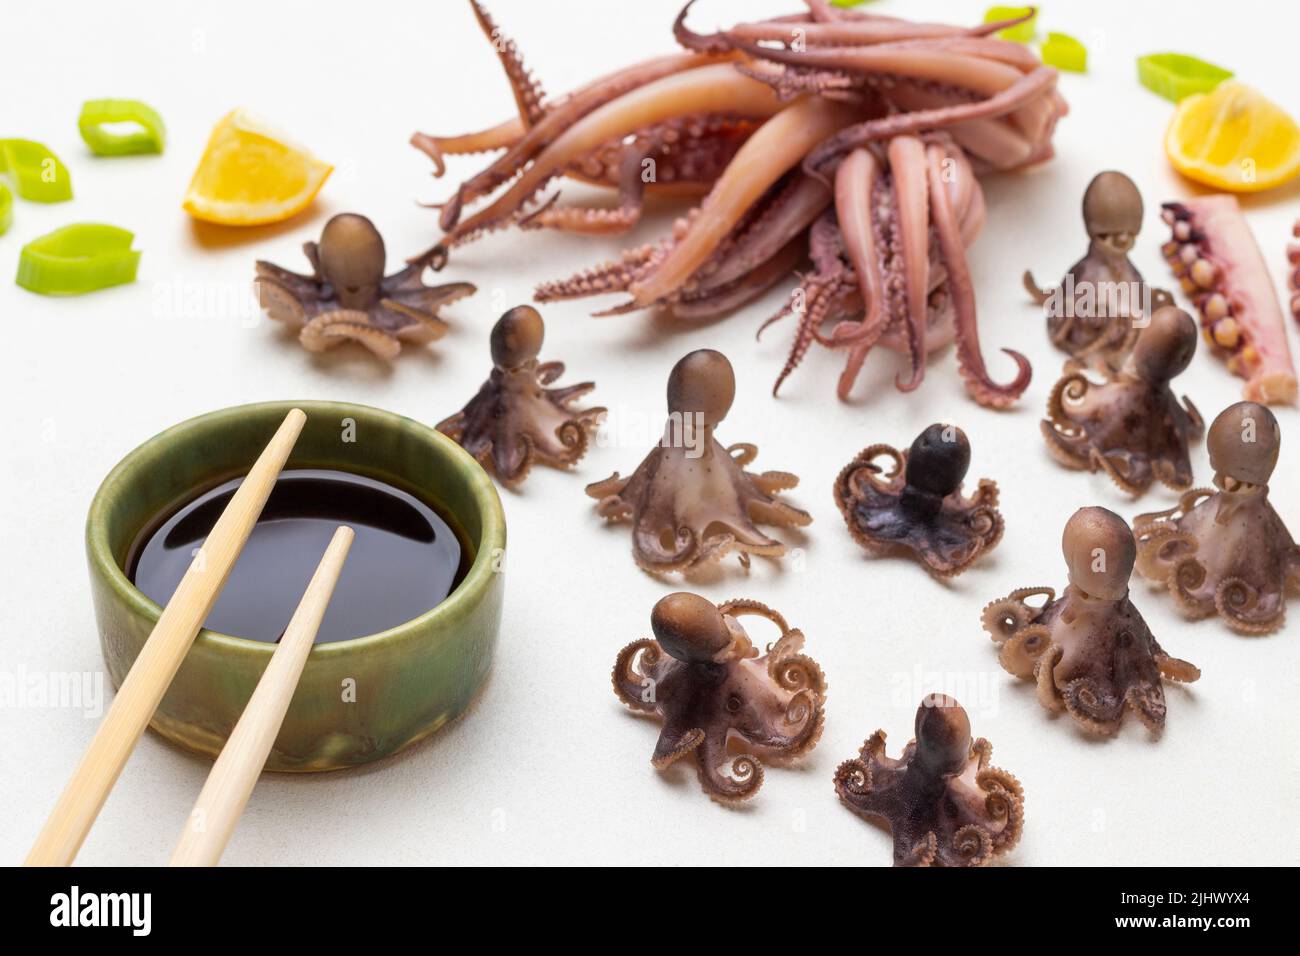 Salsa di soia in ciotola e bastoni di bambù. Bebè di polpo bollito e calamari con tentacoli sul tavolo. Vista dall'alto. Sfondo bianco Foto Stock